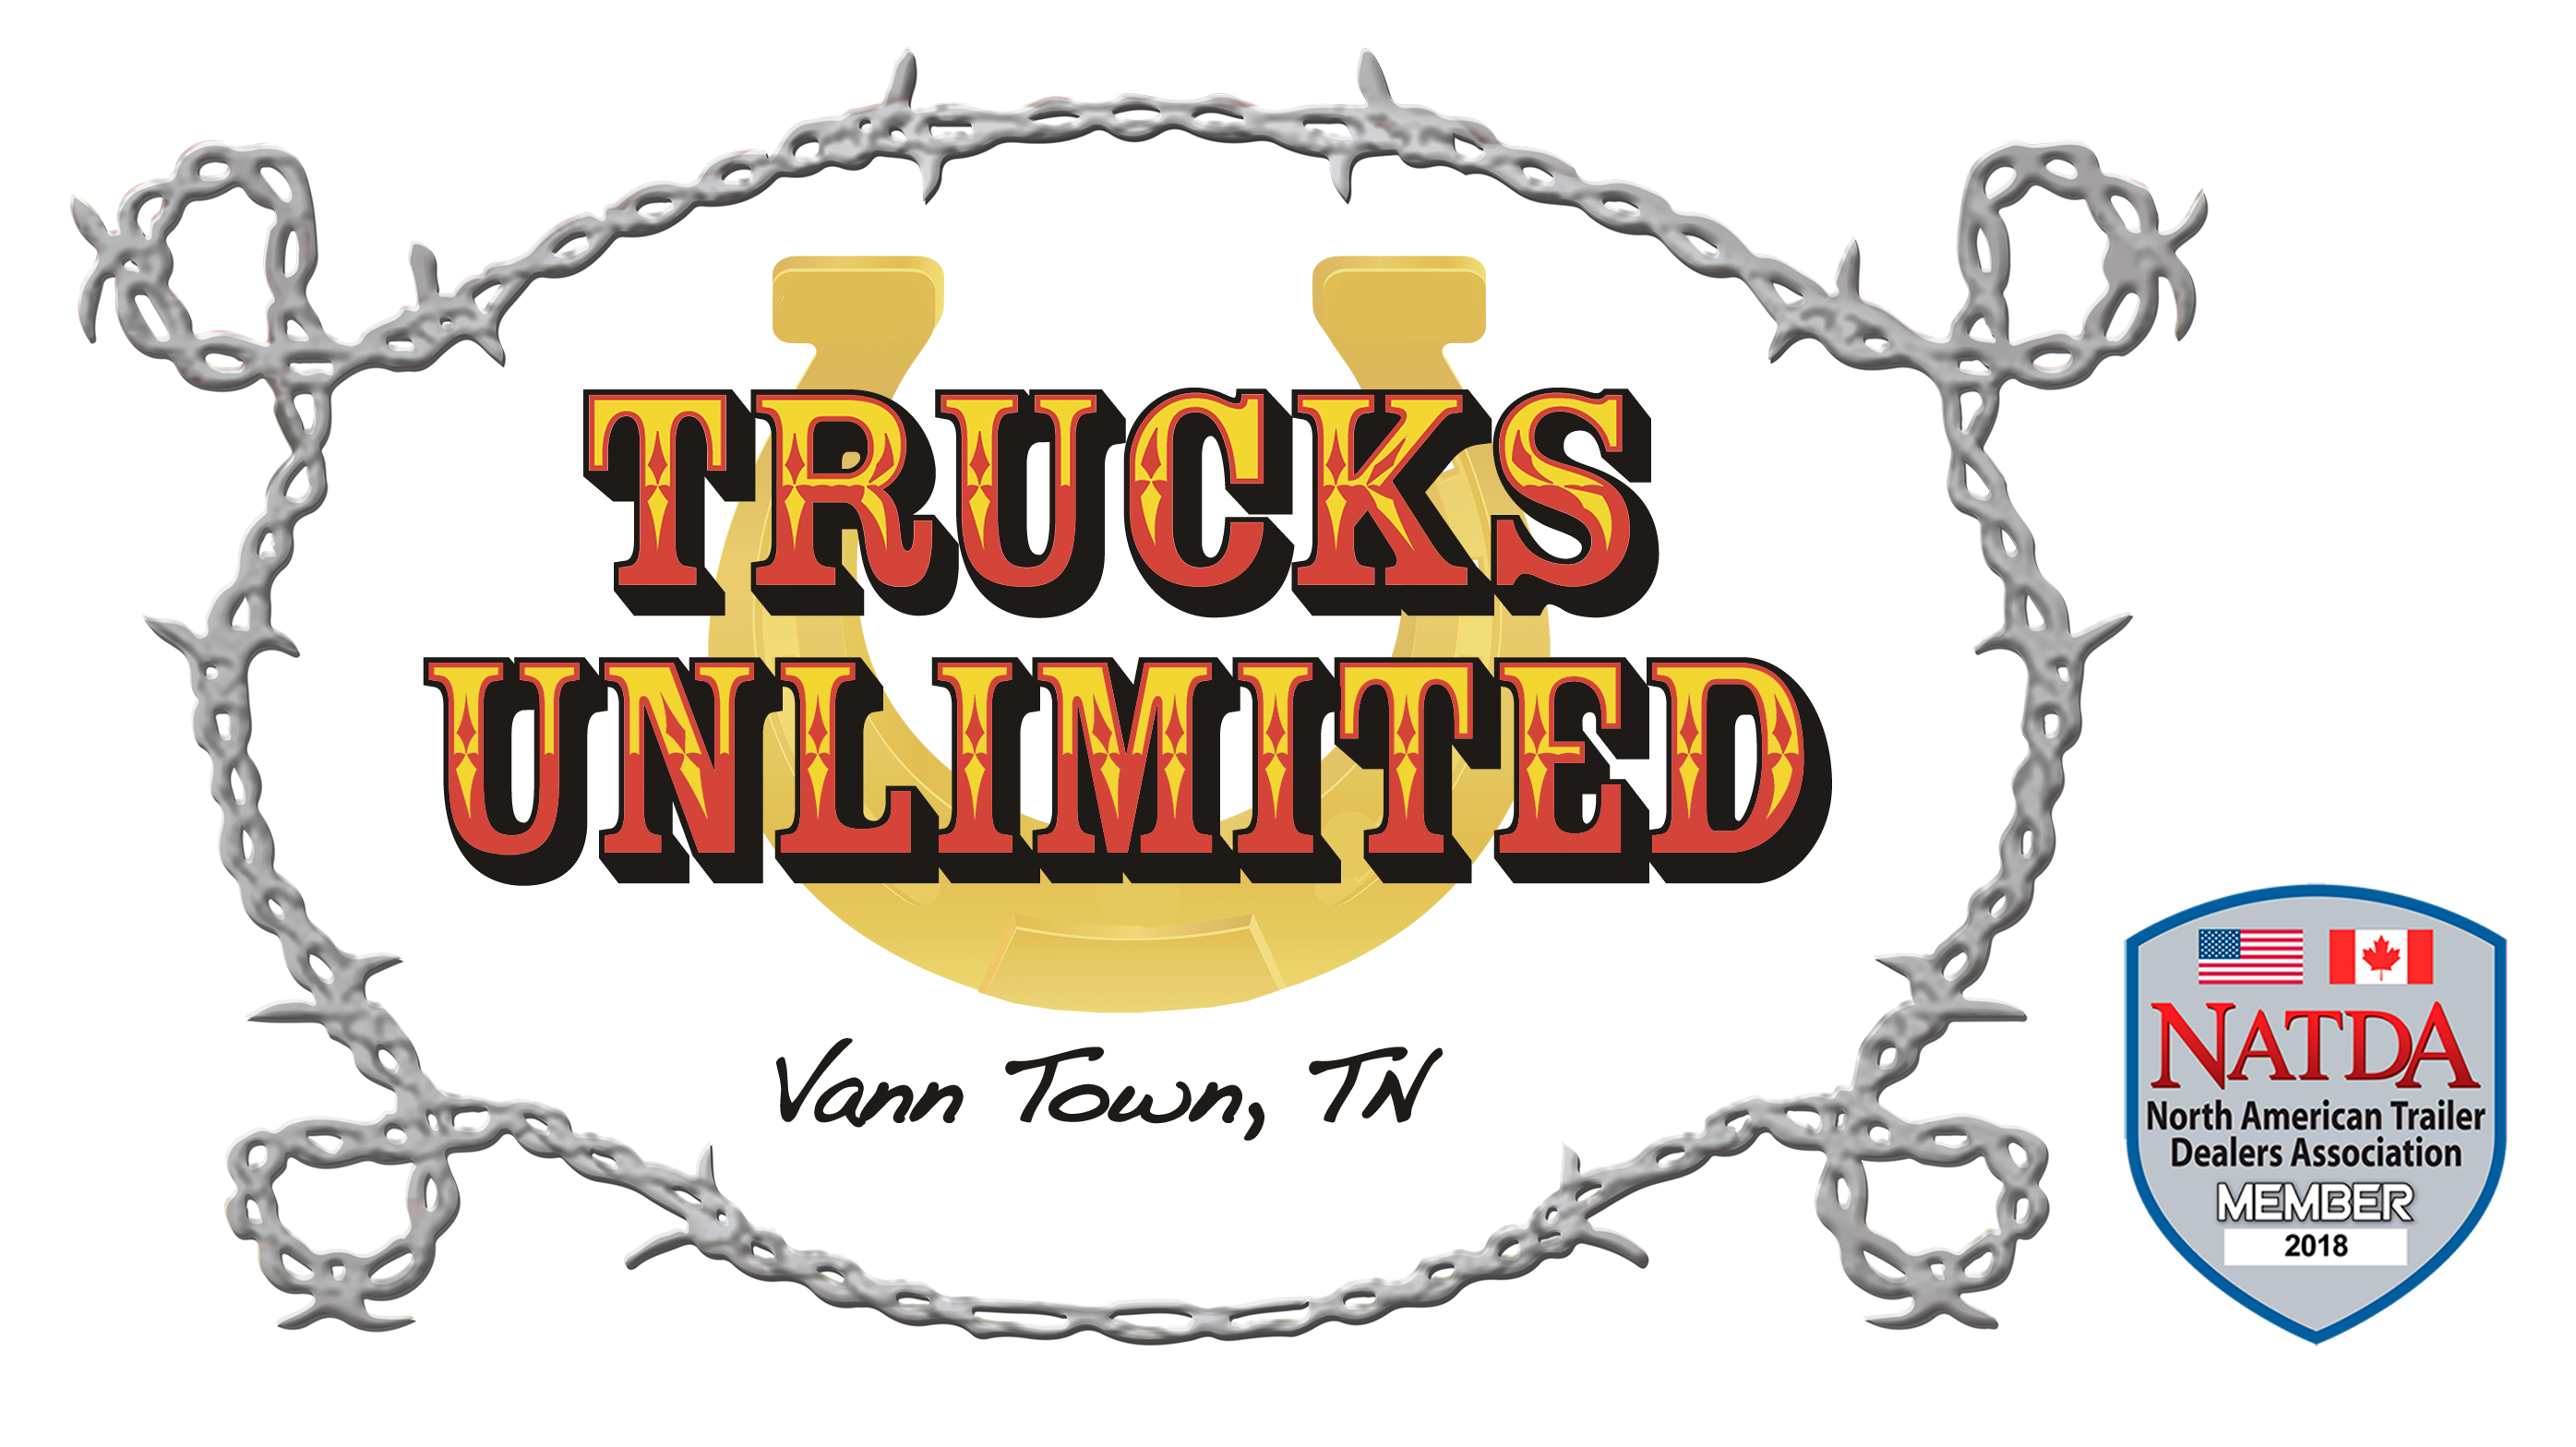 Trucks Unlimited